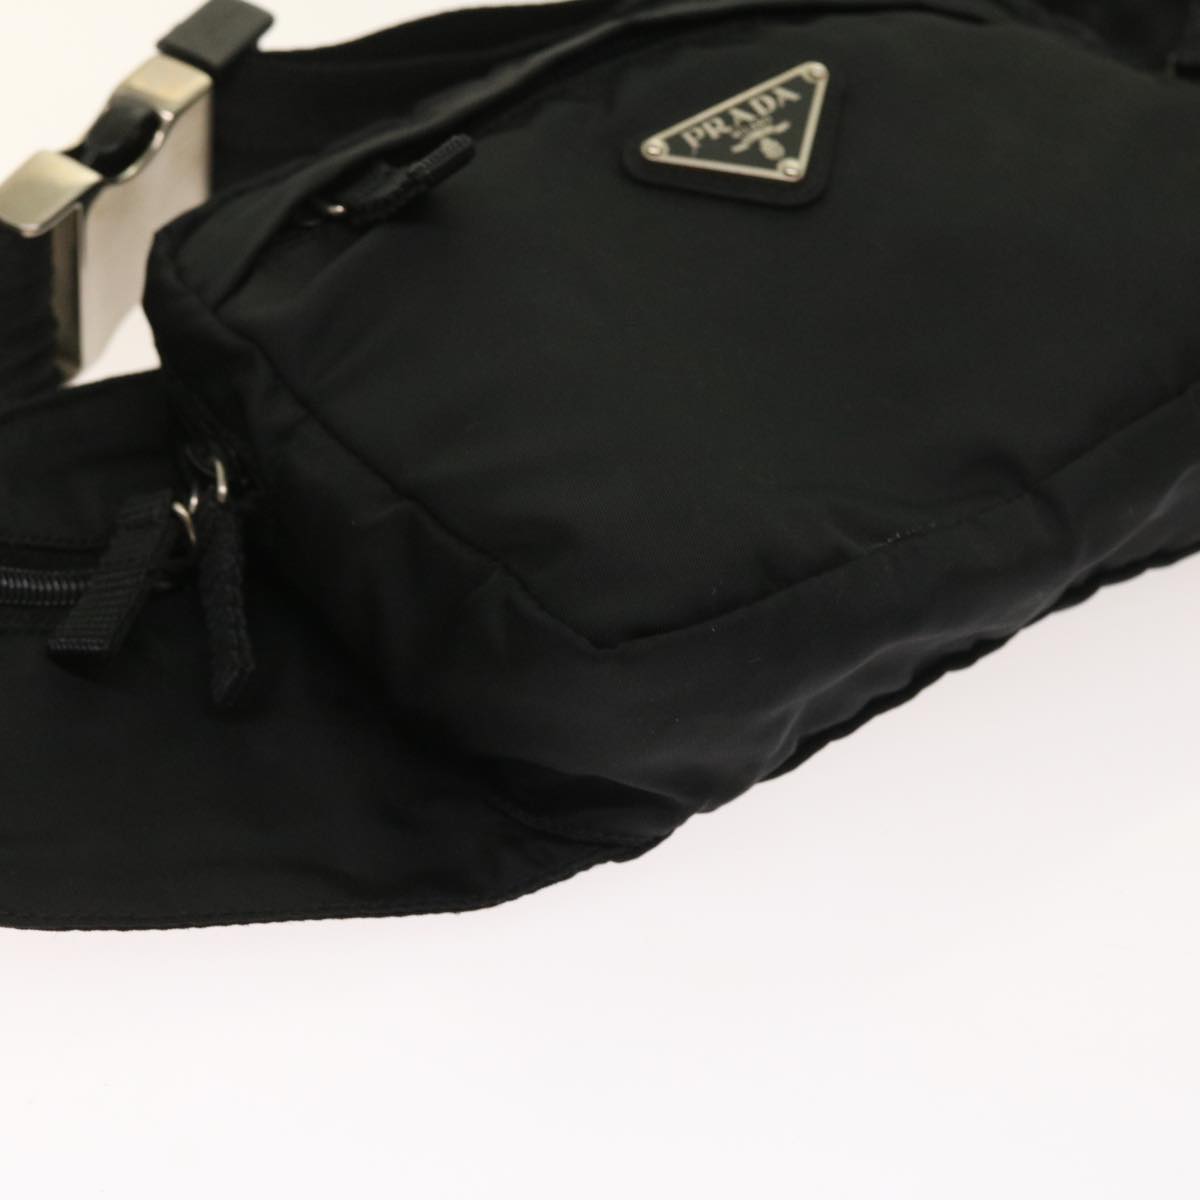 PRADA Waist bag Nylon Black Auth 57263